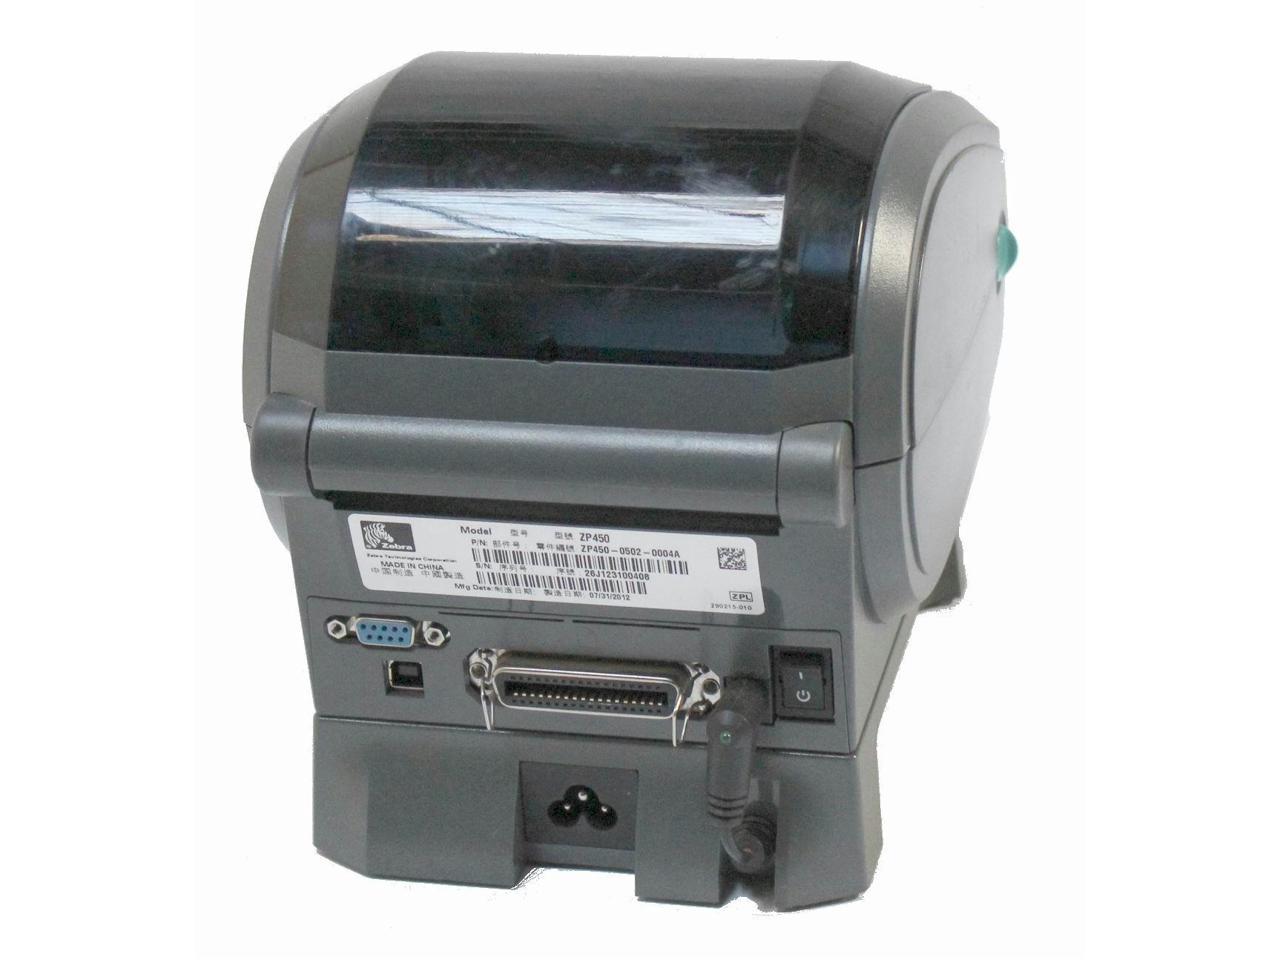 Genuine Zebra Zp 450 Ups Ctp Label Thermal Printer 9708